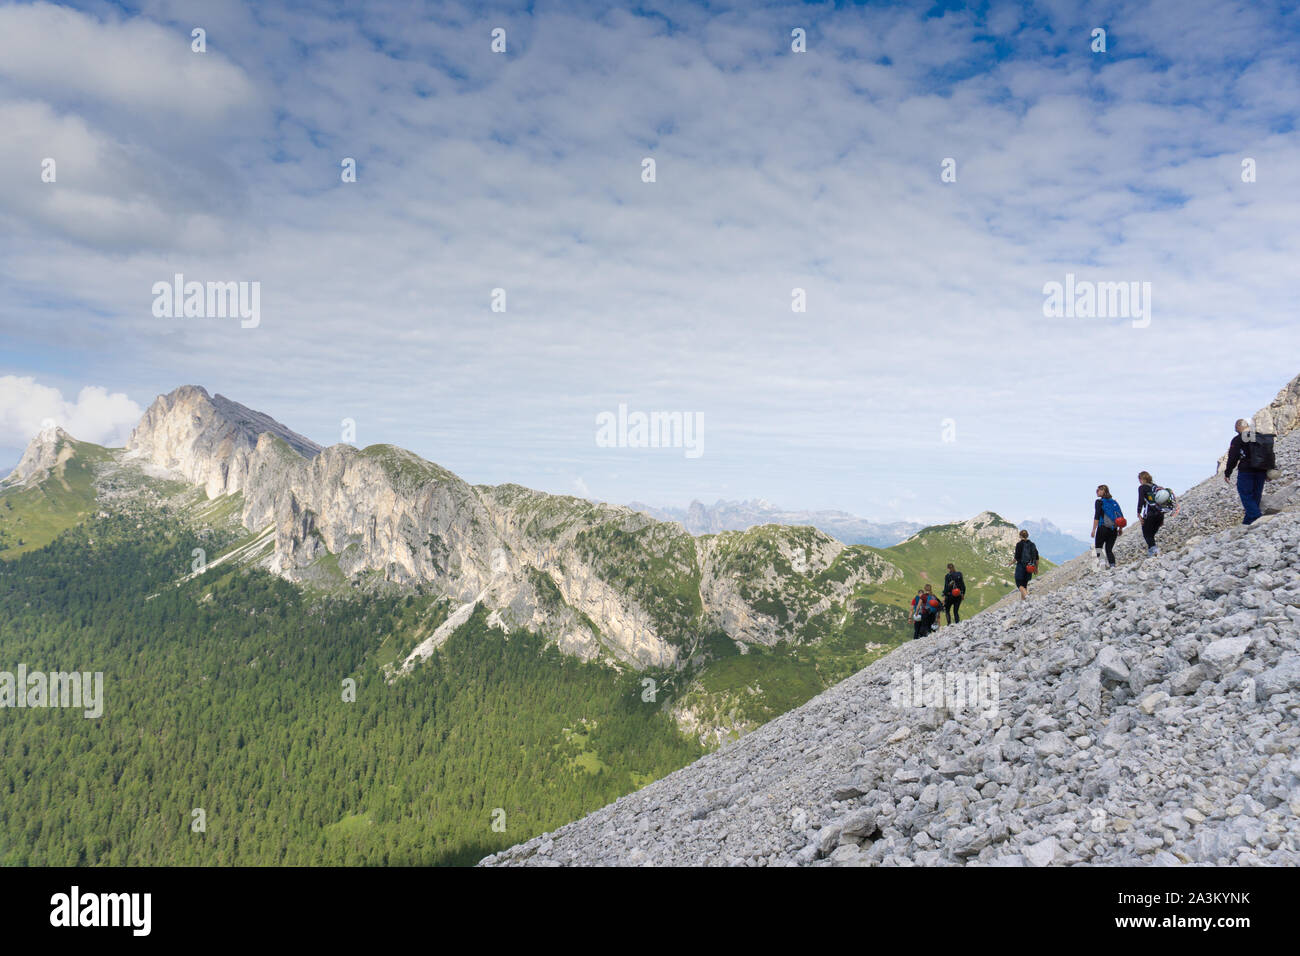 Vue panoramique d'un groupe d'alpinistes de la randonnée sur une montagne à côté d'une voie d'escalade Banque D'Images